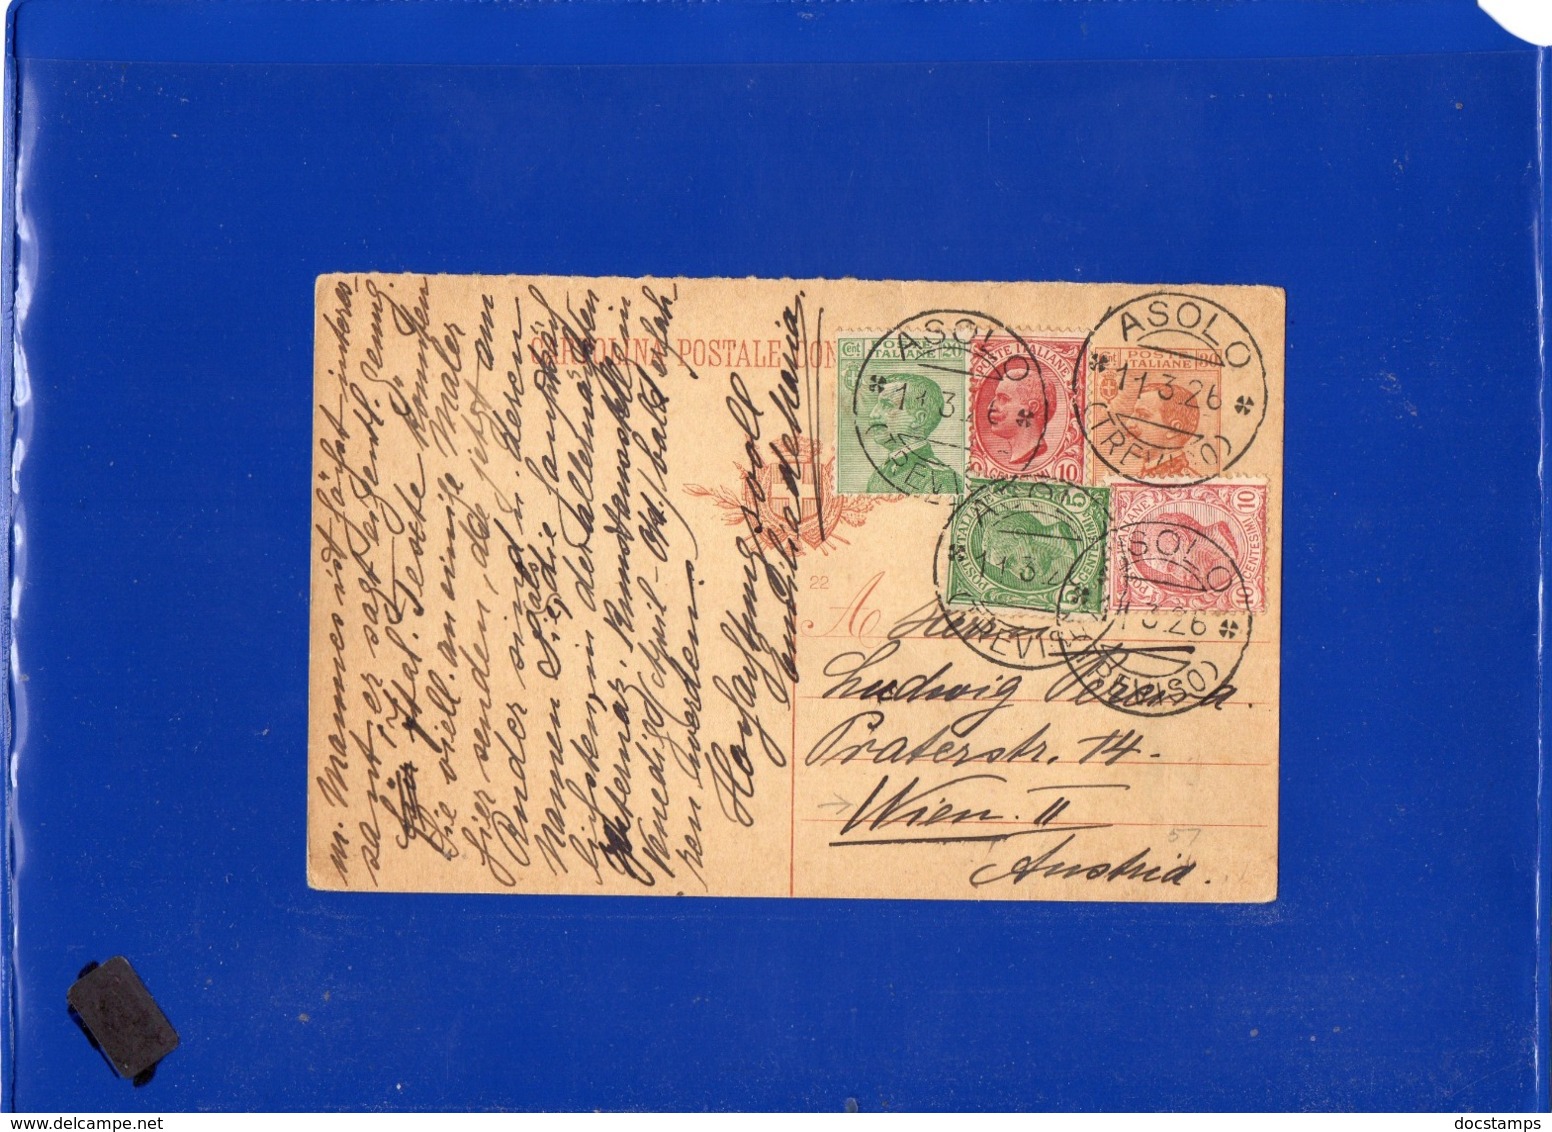 ##(DAN1910)-11-3-1926-Cartolina Postale Cent 30 Mill.22 Da Asolo (Treviso) Per L'estero, Vienna-Austria - Storia Postale